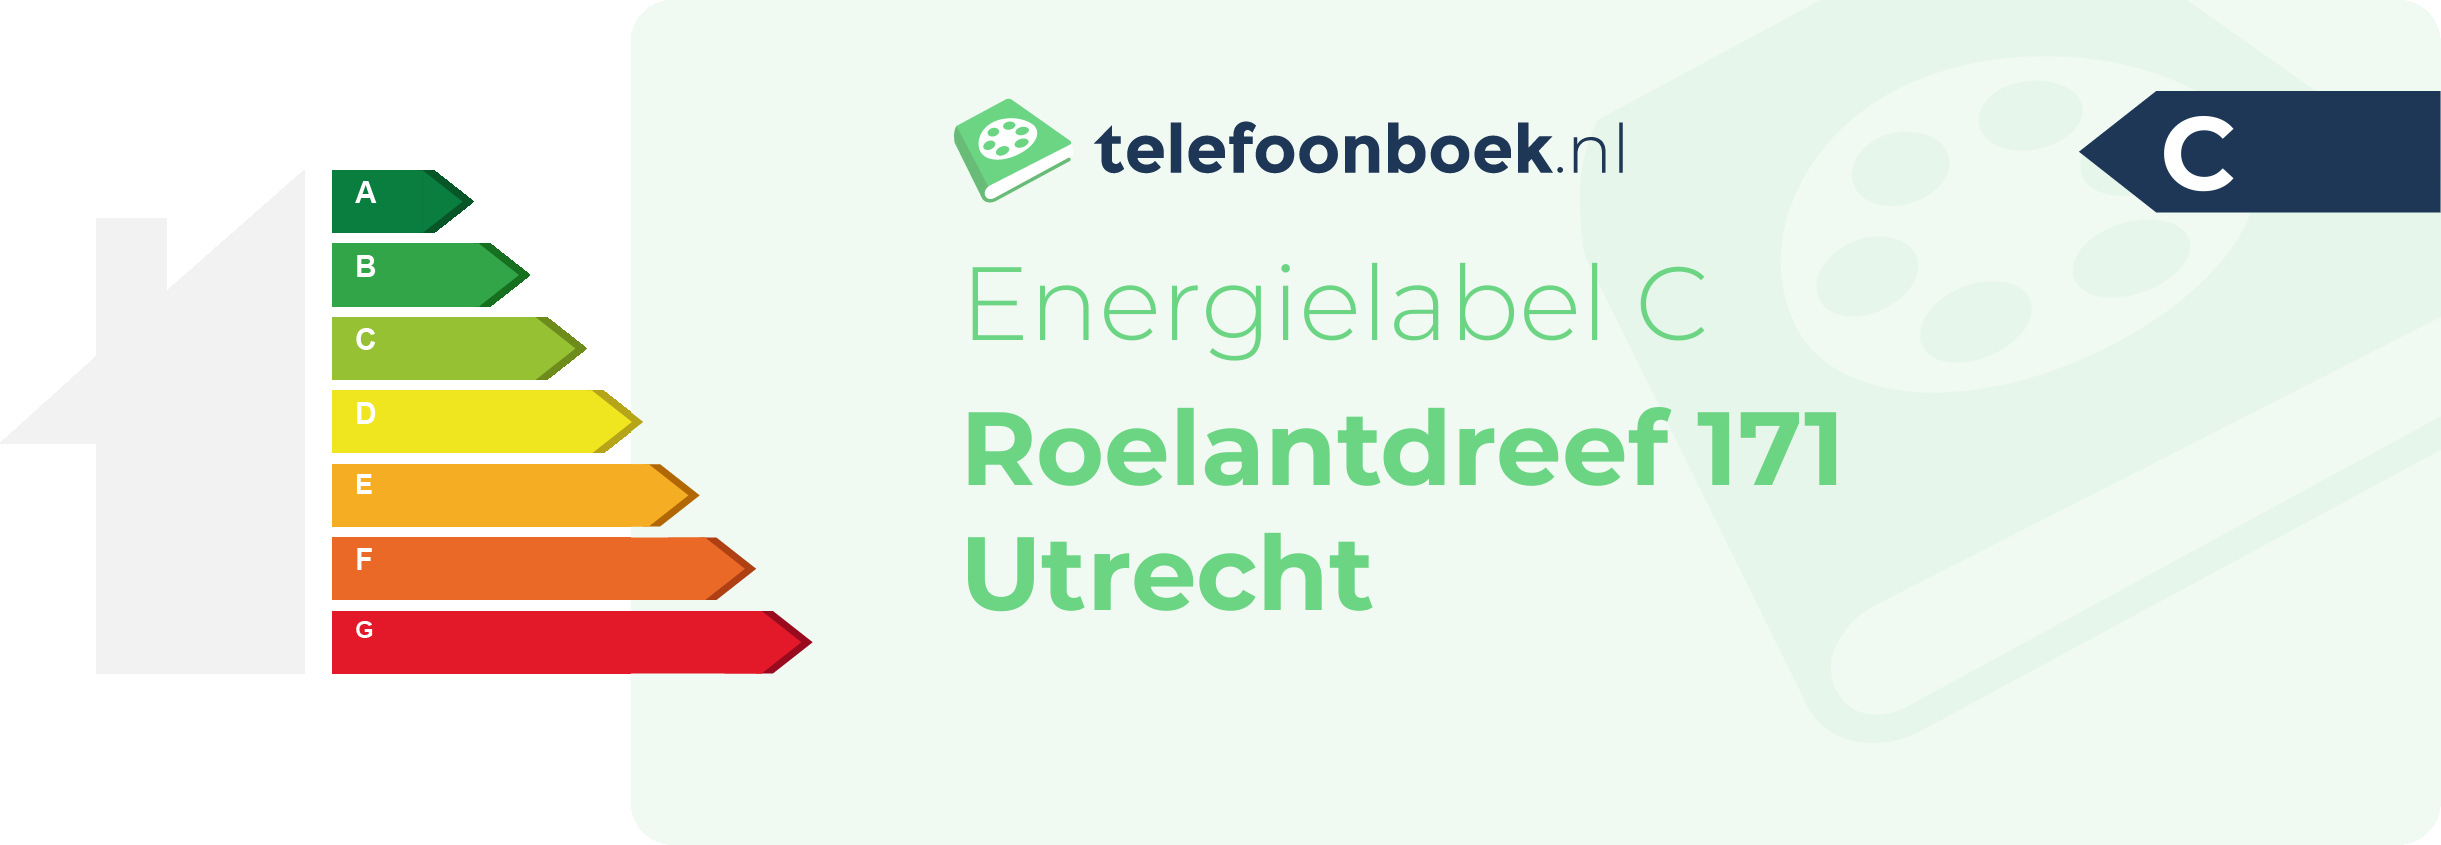 Energielabel Roelantdreef 171 Utrecht